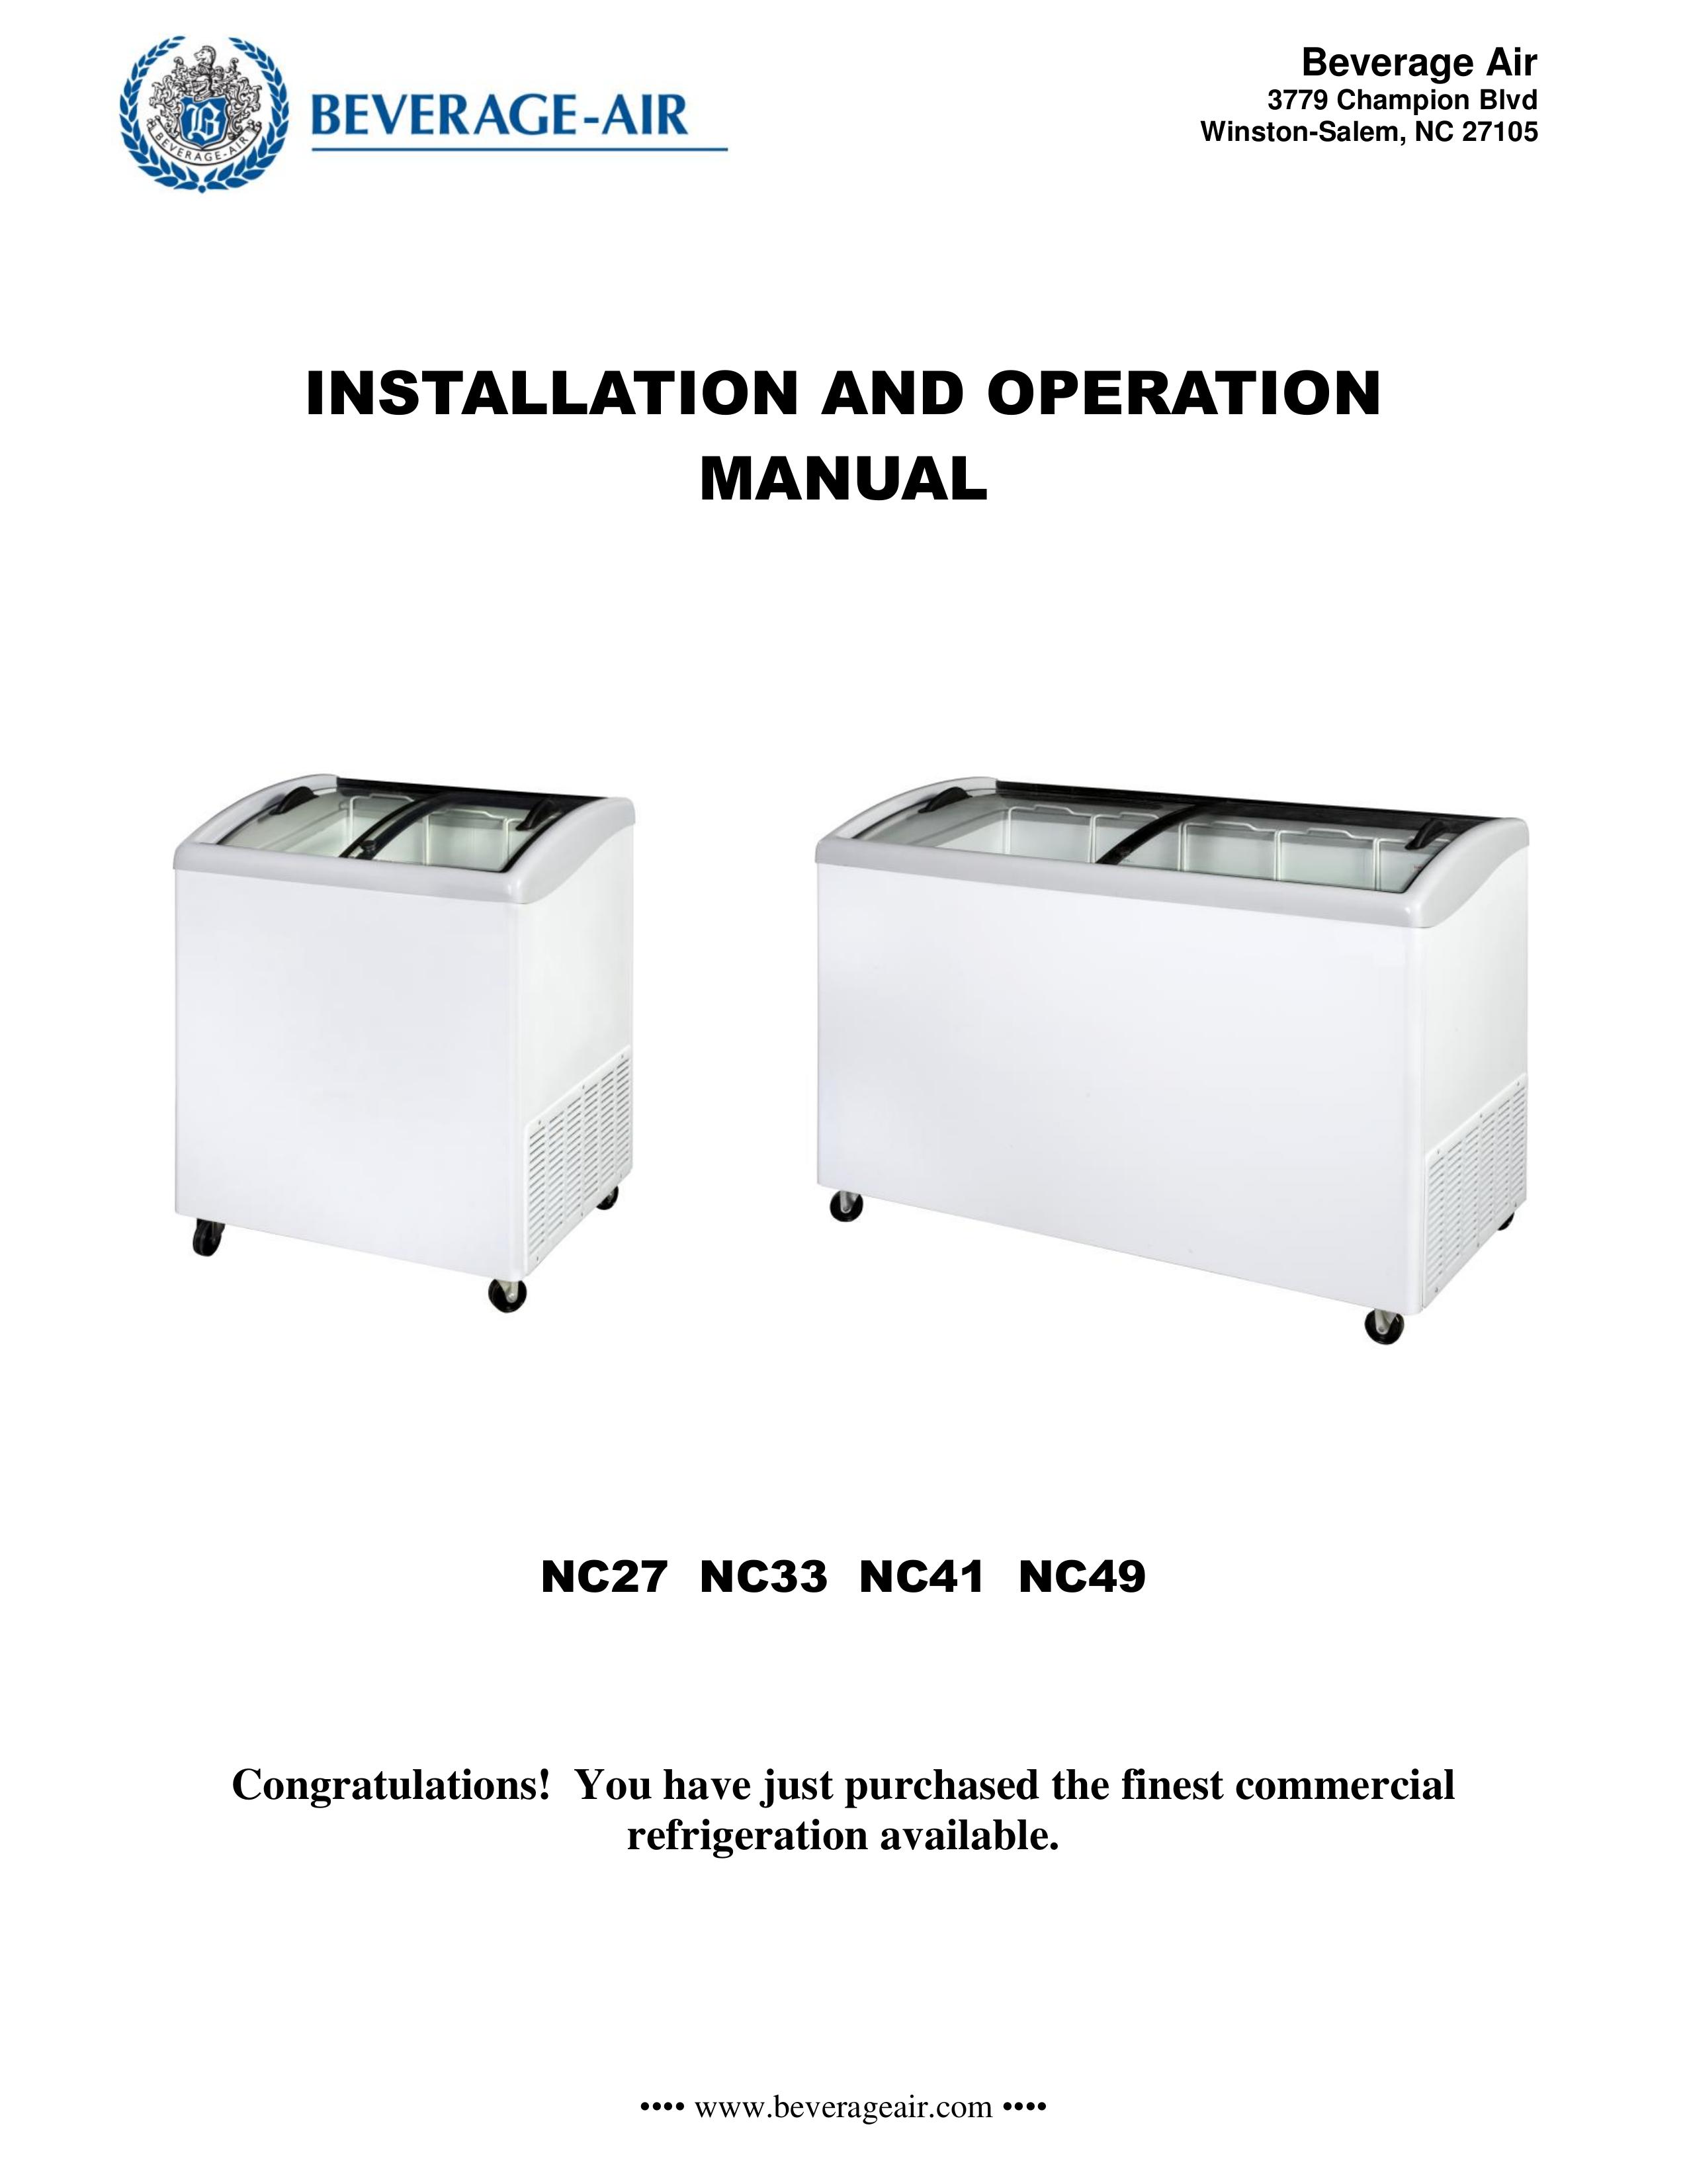 Beverage-Air NC33 Refrigerator User Manual